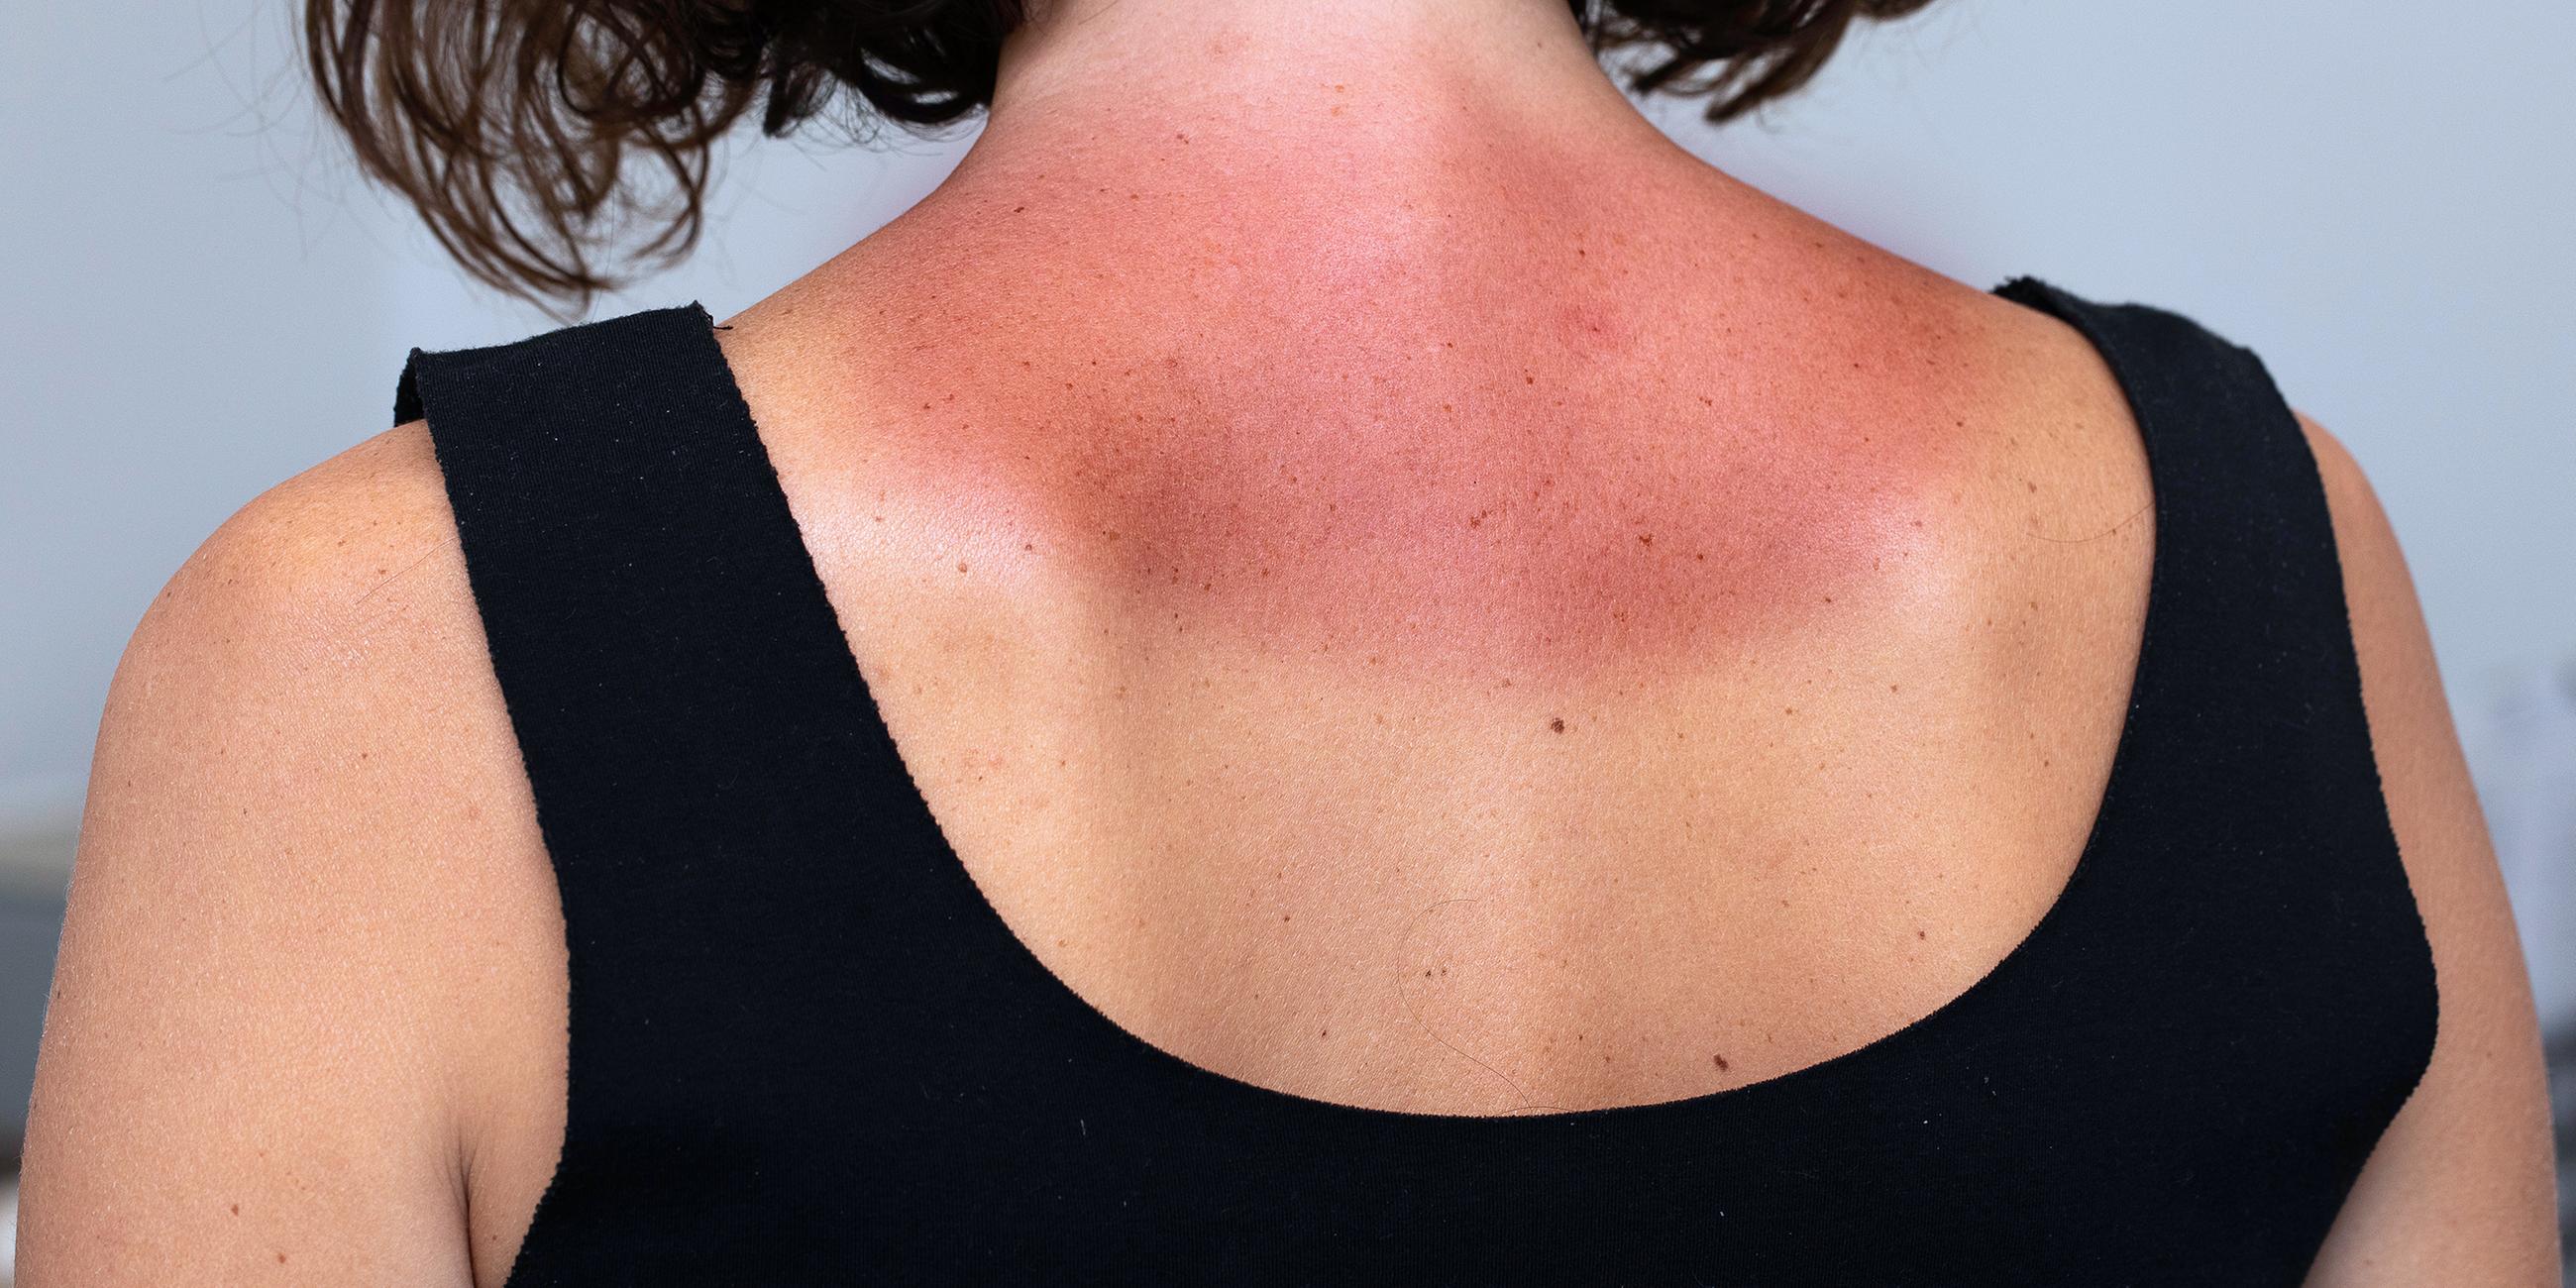 Junge Frau mit starken Rötungen und schmerzhafter Haut im Nackenbereich nach Sonnenbaden.